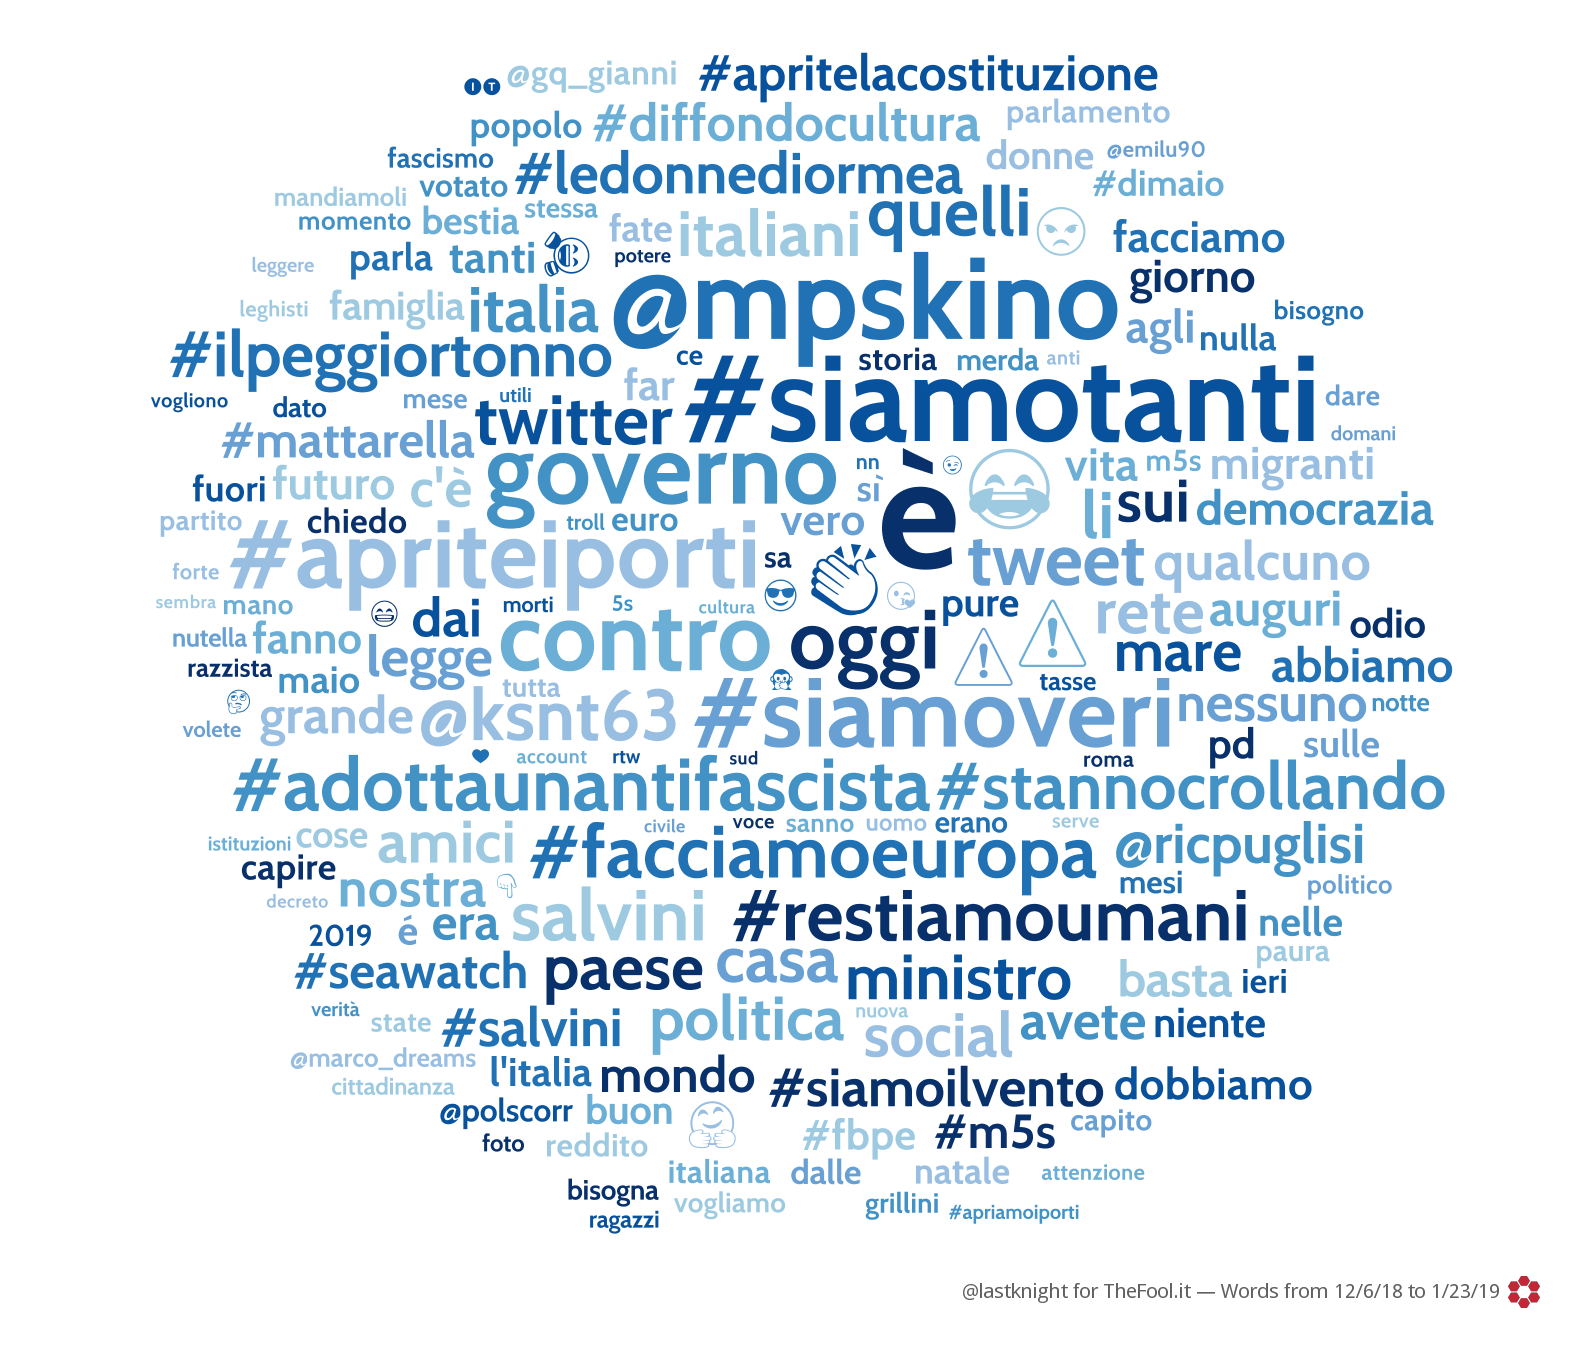 La rete Twitter più grande d'Italia: i dati dell'hashtag #FacciamoRete foto 5